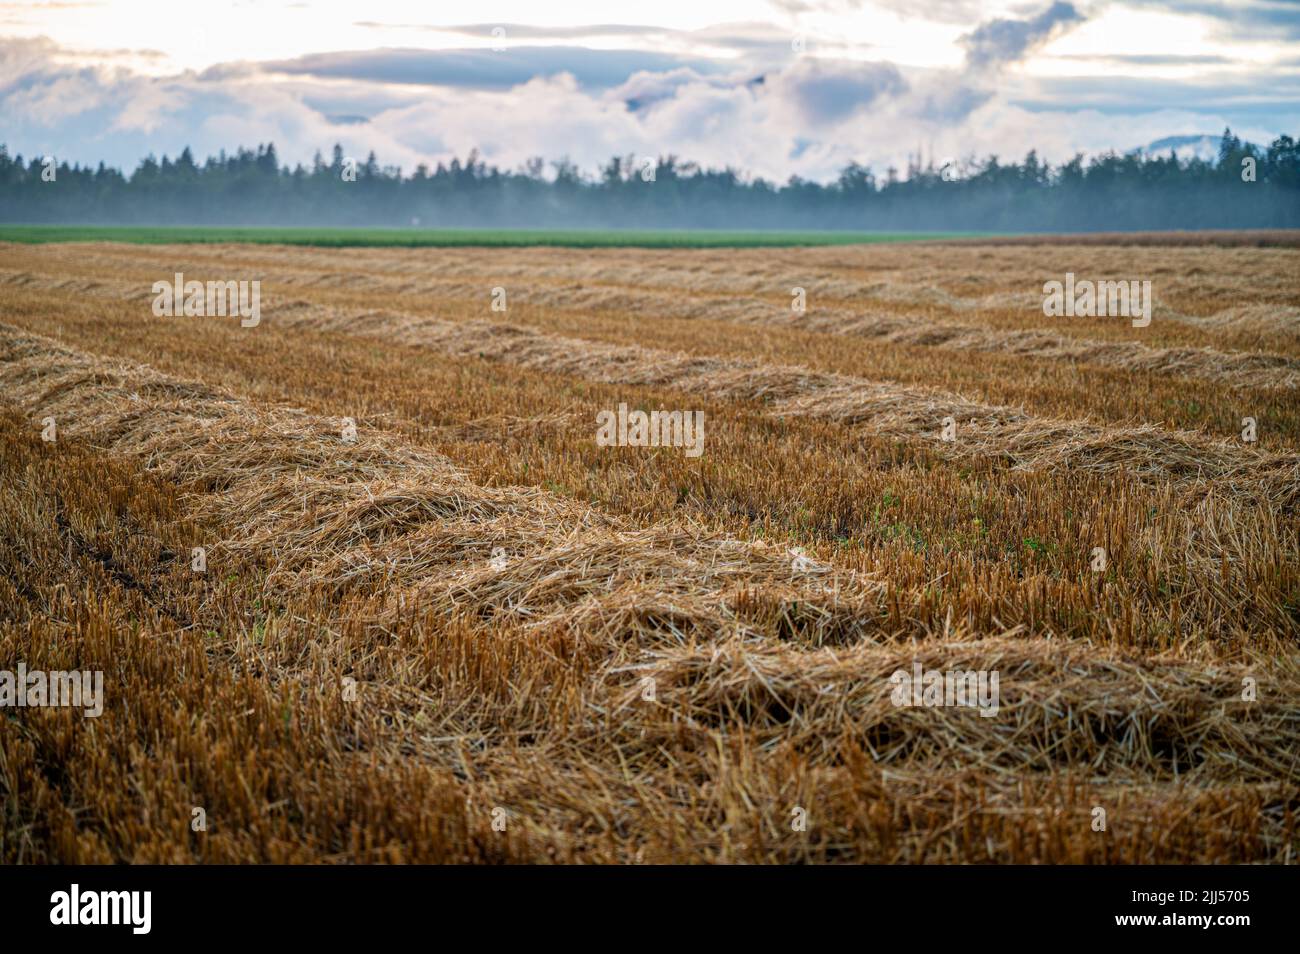 Campo de trigo dorado cosechado bajo cielo nublado con bosque en el fondo. Foto de stock